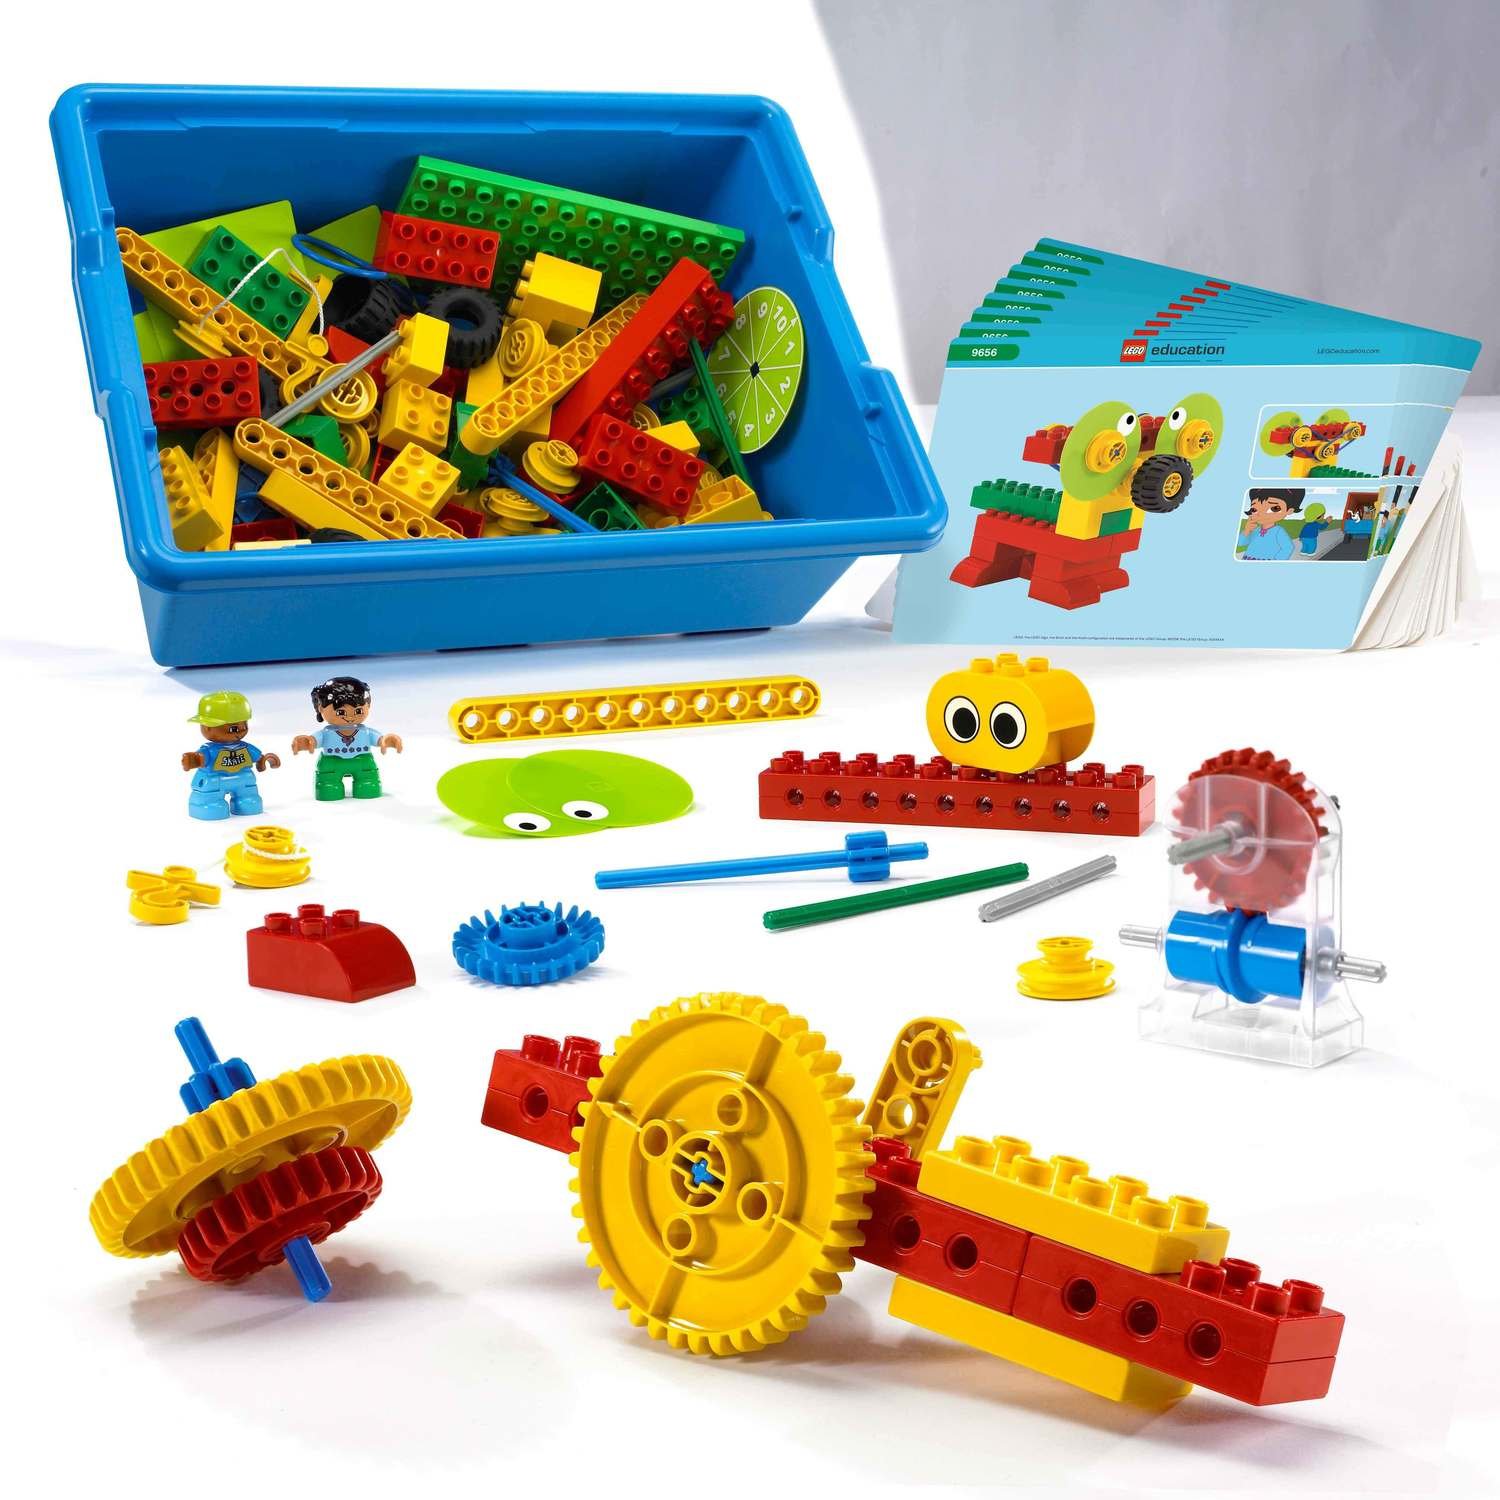 buy lego education sets